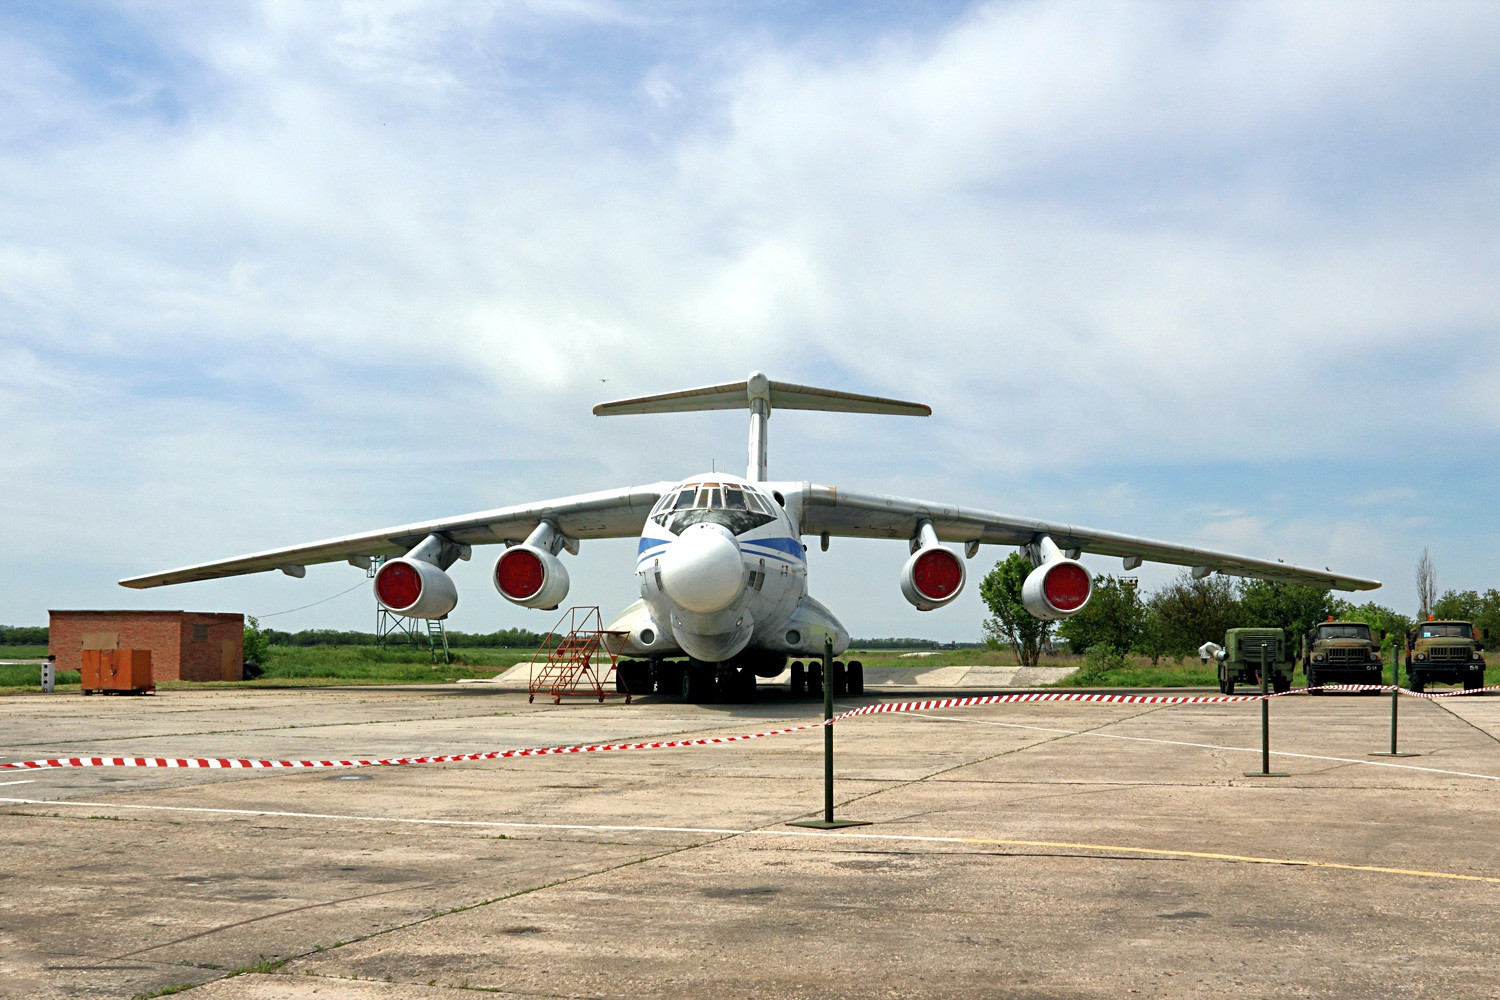 A-60 – sovjetski/ruski eksperimentalni leteći laboratorij, nosač laserskog oružja napravljen na bazi zrakoplova Il-76MD. Namijenjen je za istraživanje širenja laserskih zraka u gornjim slojevima atmosfere, a kasnije i za ometanje neprijateljskog opažanja.
